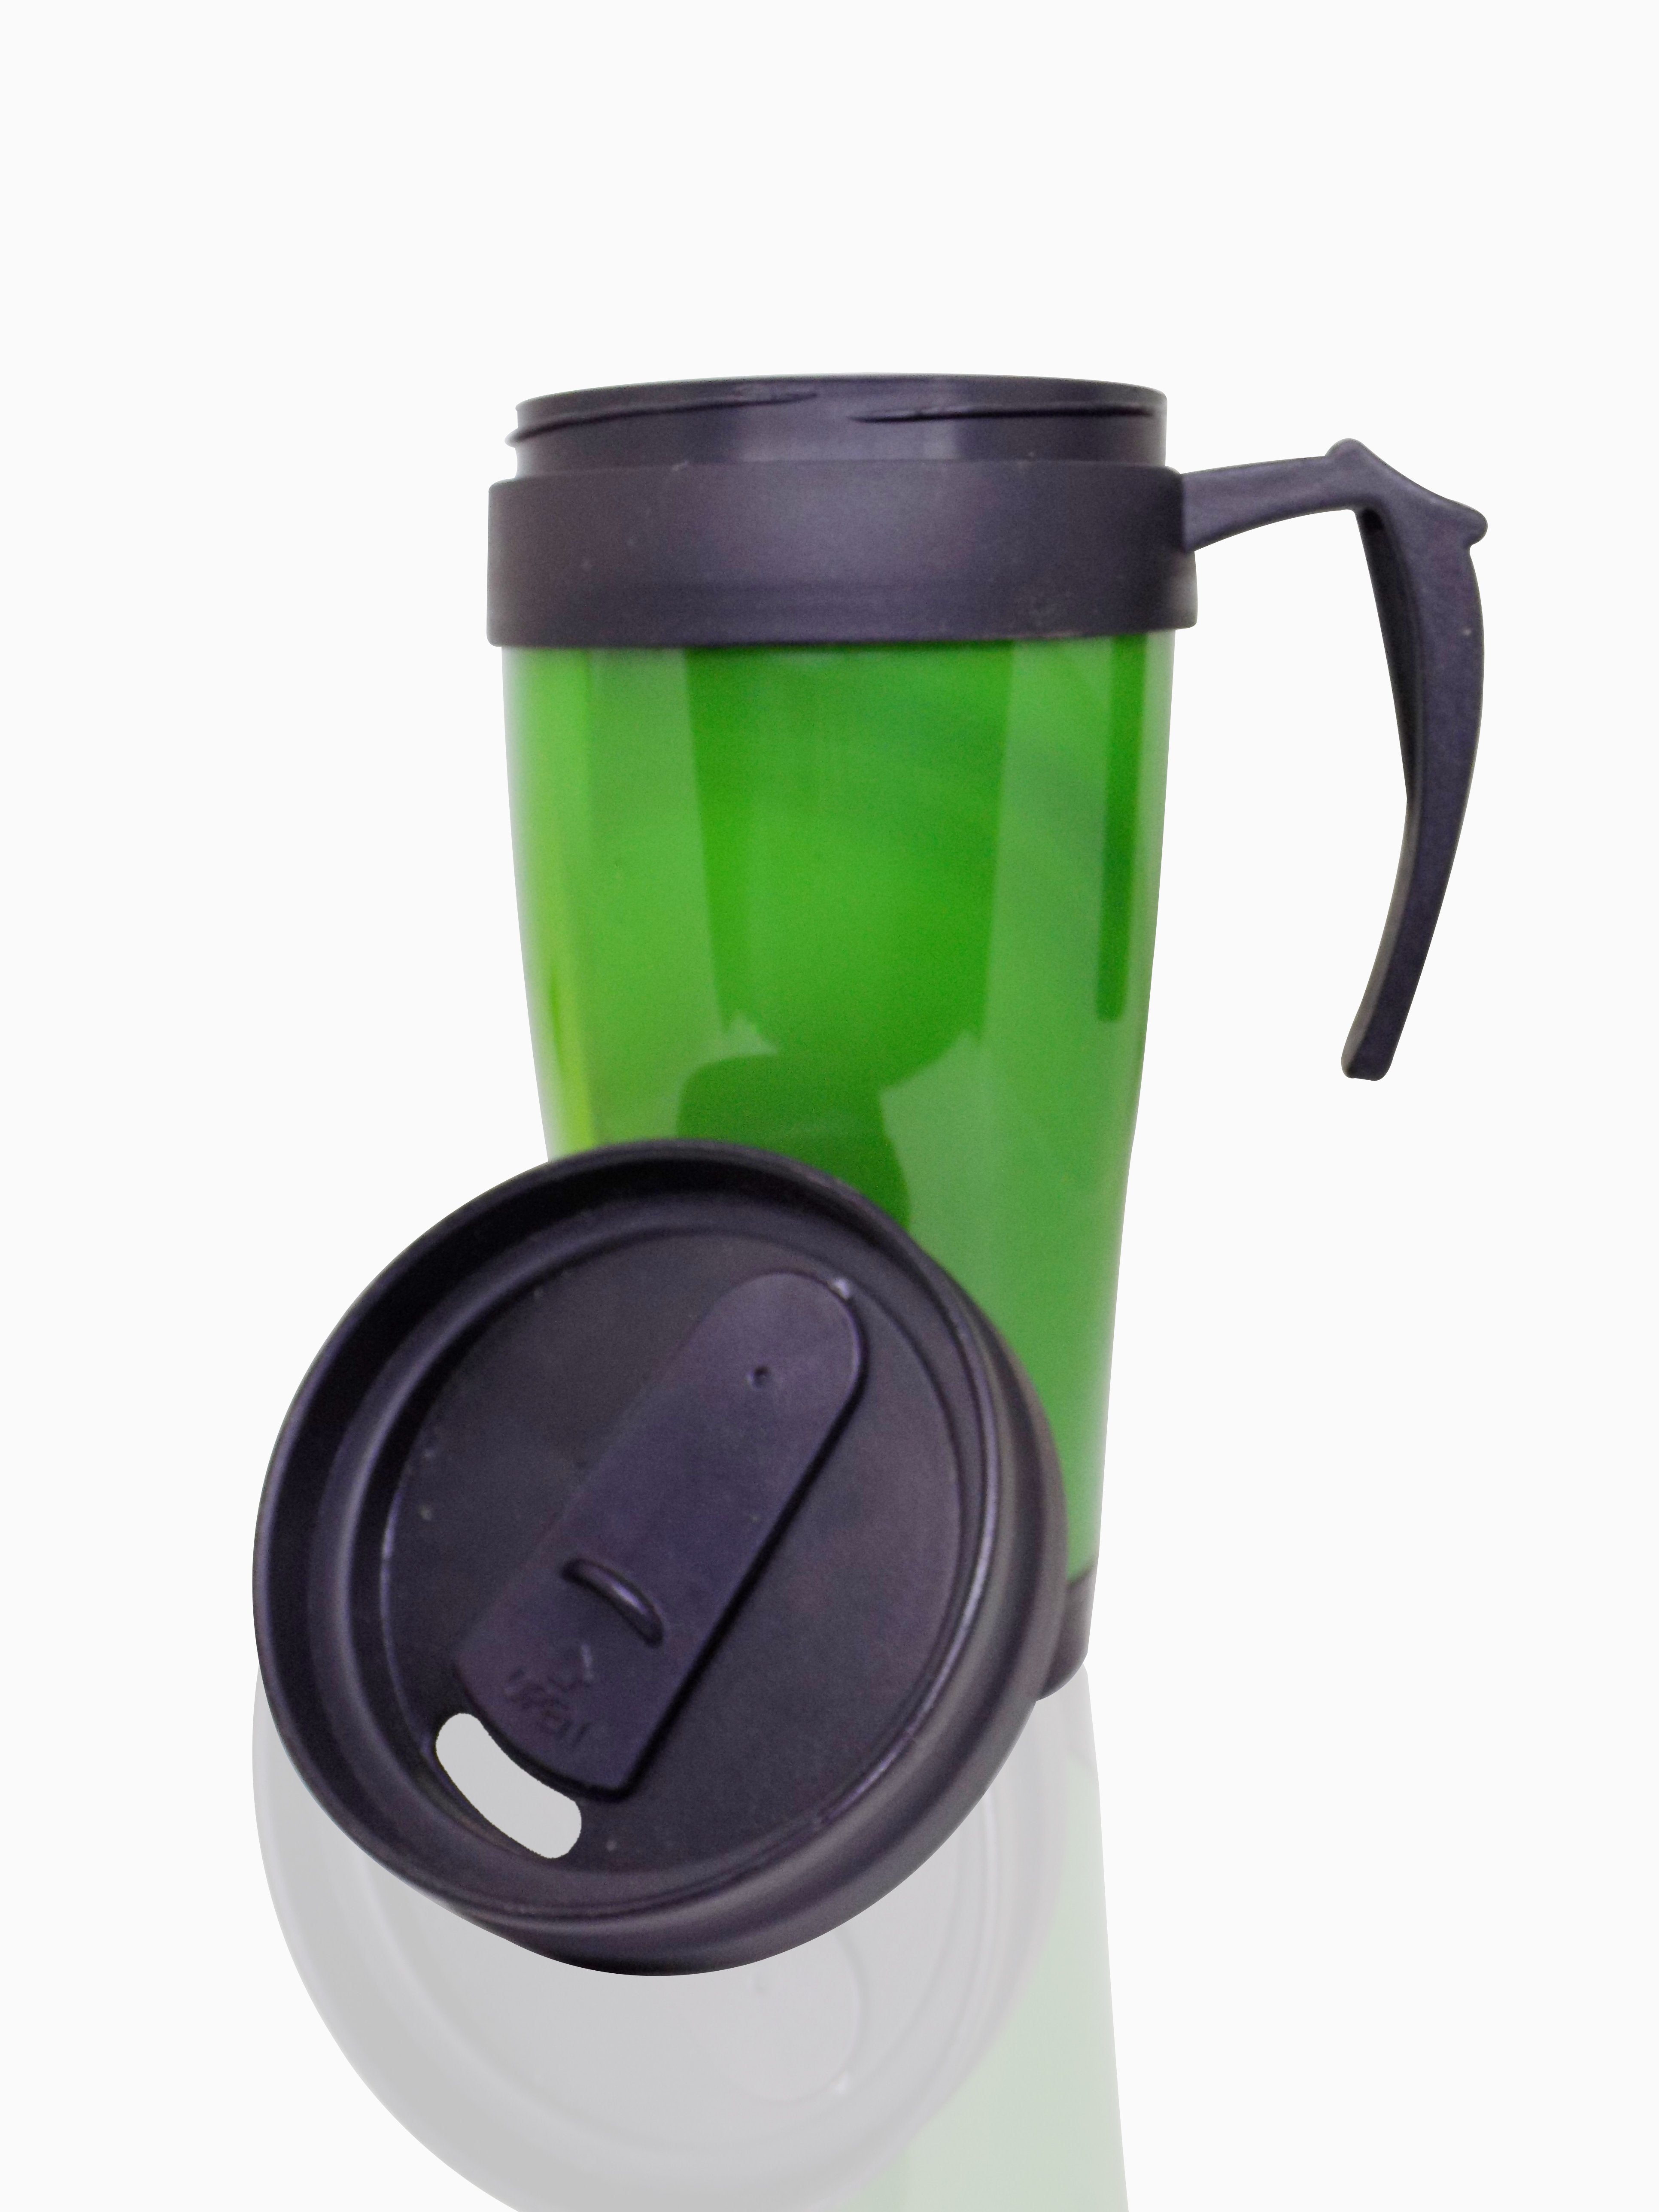 0552 Portable Travel Mug/Tumbler With Lid - SkyShopy